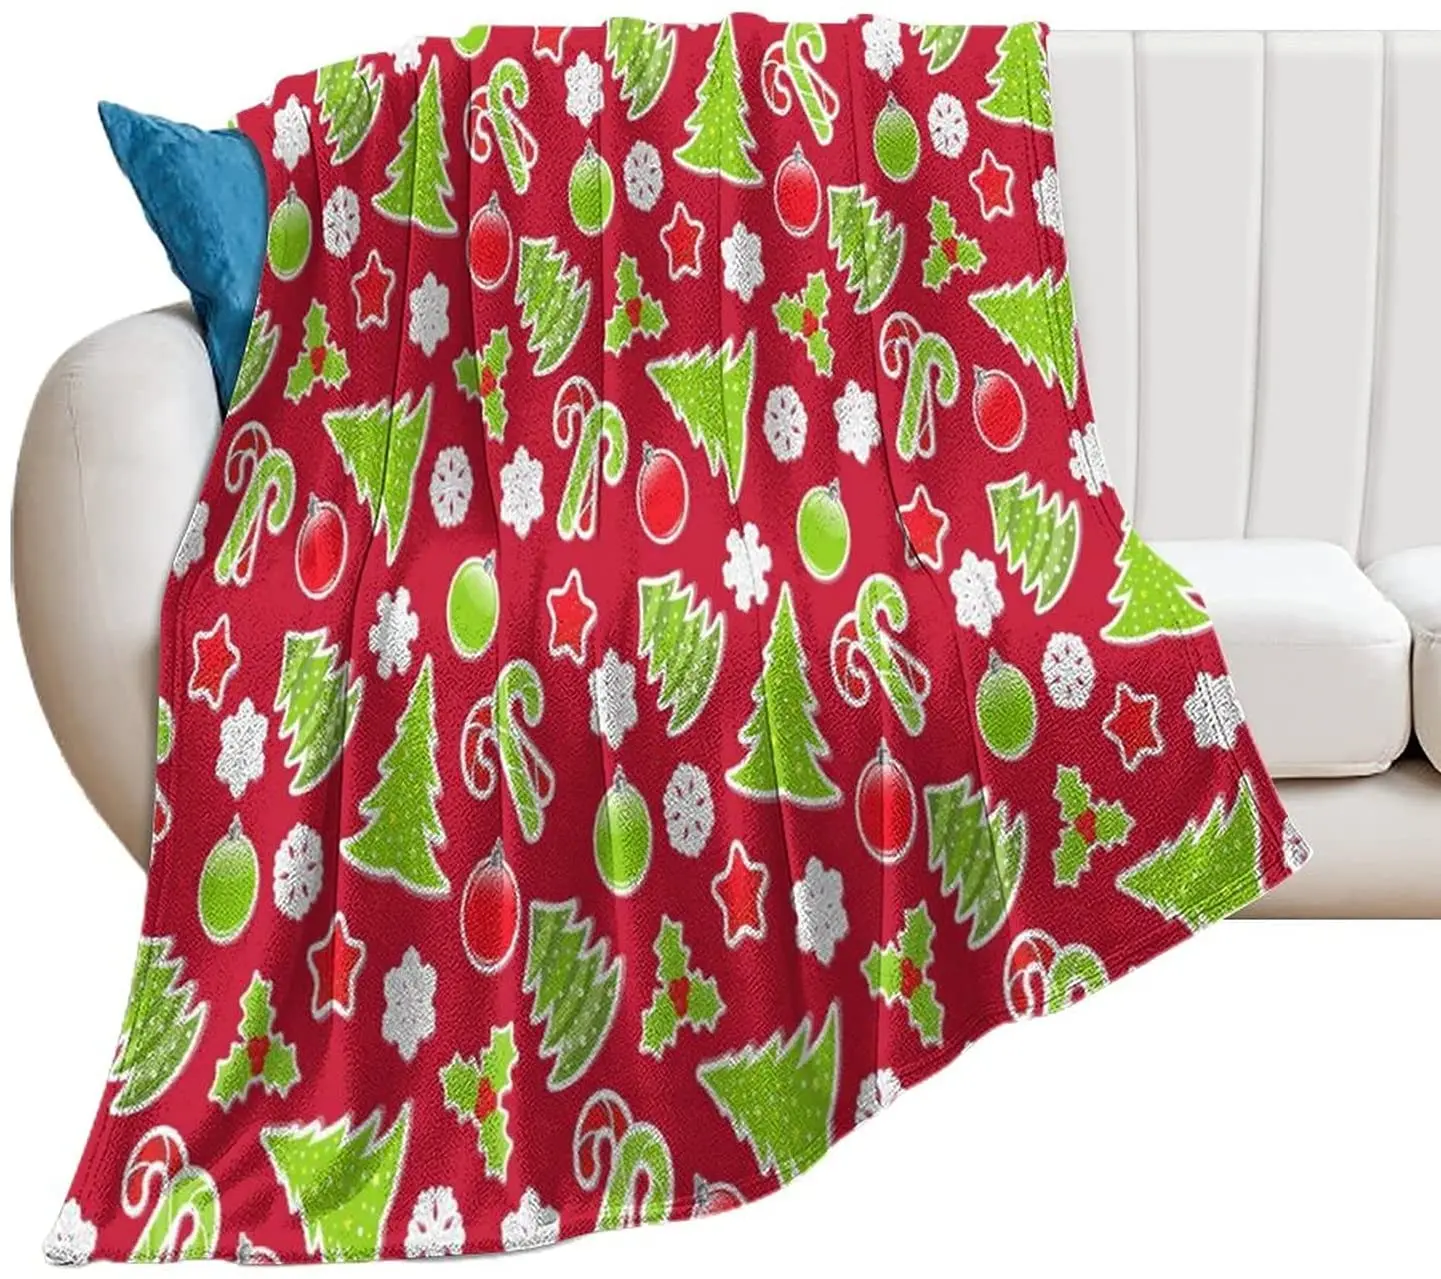 

Одеяло на рождественскую тематику citari, мягкое флисовое Фланелевое легкое рождественское одеяло с яблоками и снежинками, удобное